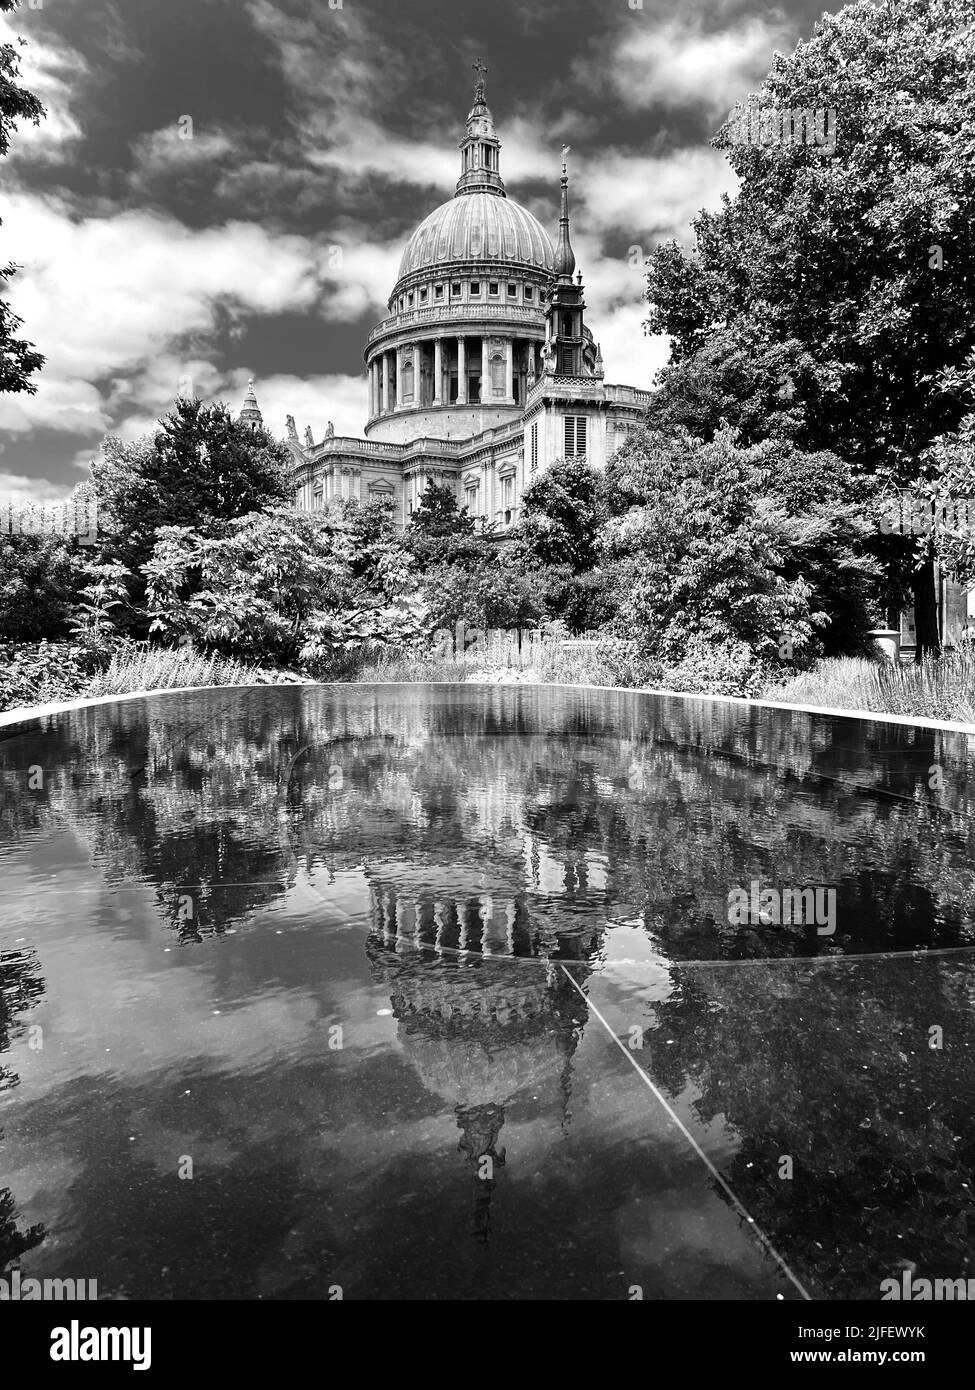 Foto in bianco e nero della Cattedrale di St Pauls a Londra, Inghilterra, riflessa in un laghetto Foto Stock